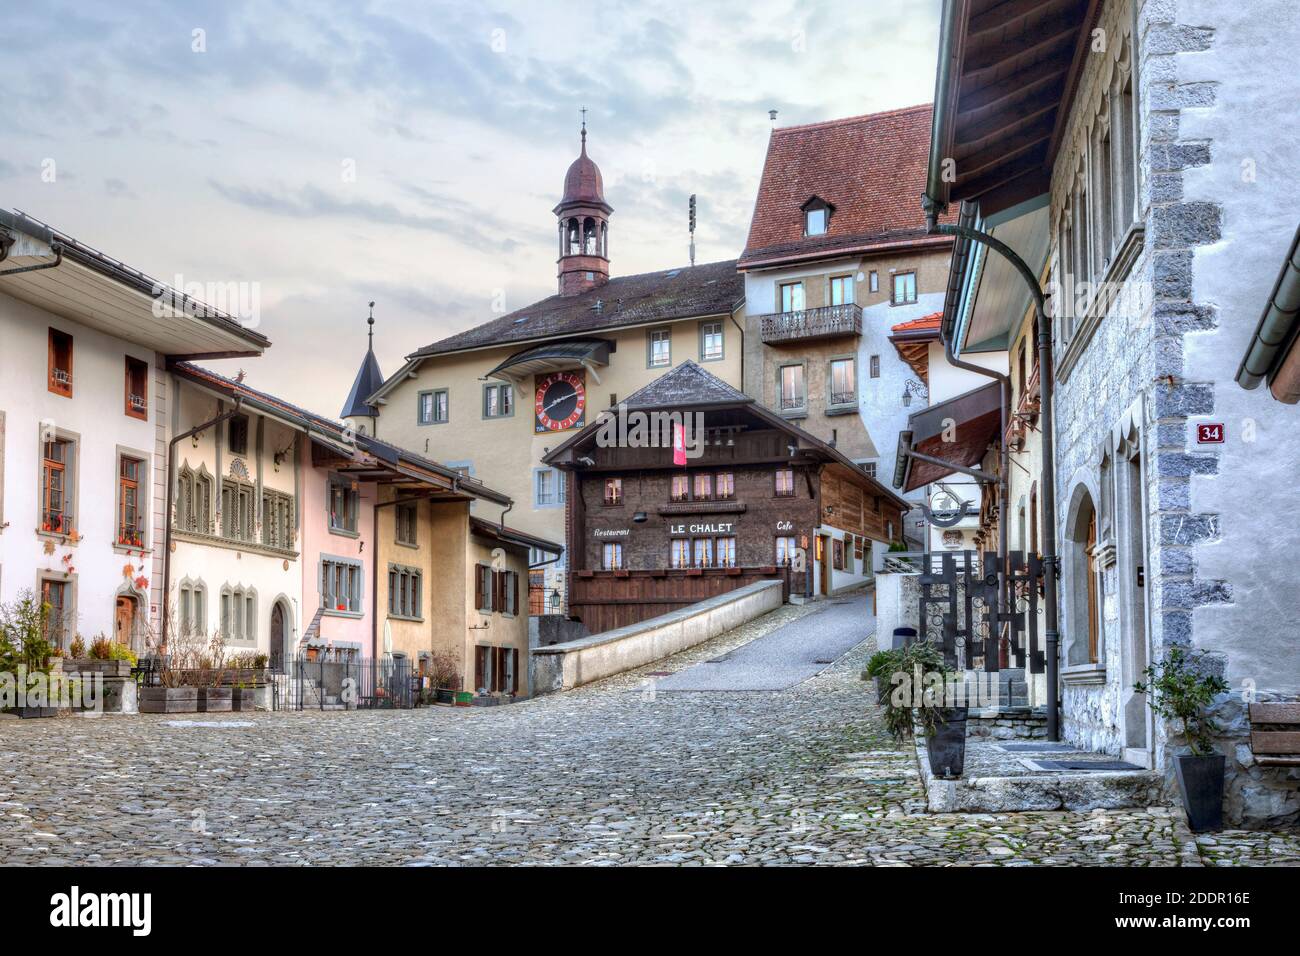 Gruyeres, Fribourg, Switzerland Stock Photo